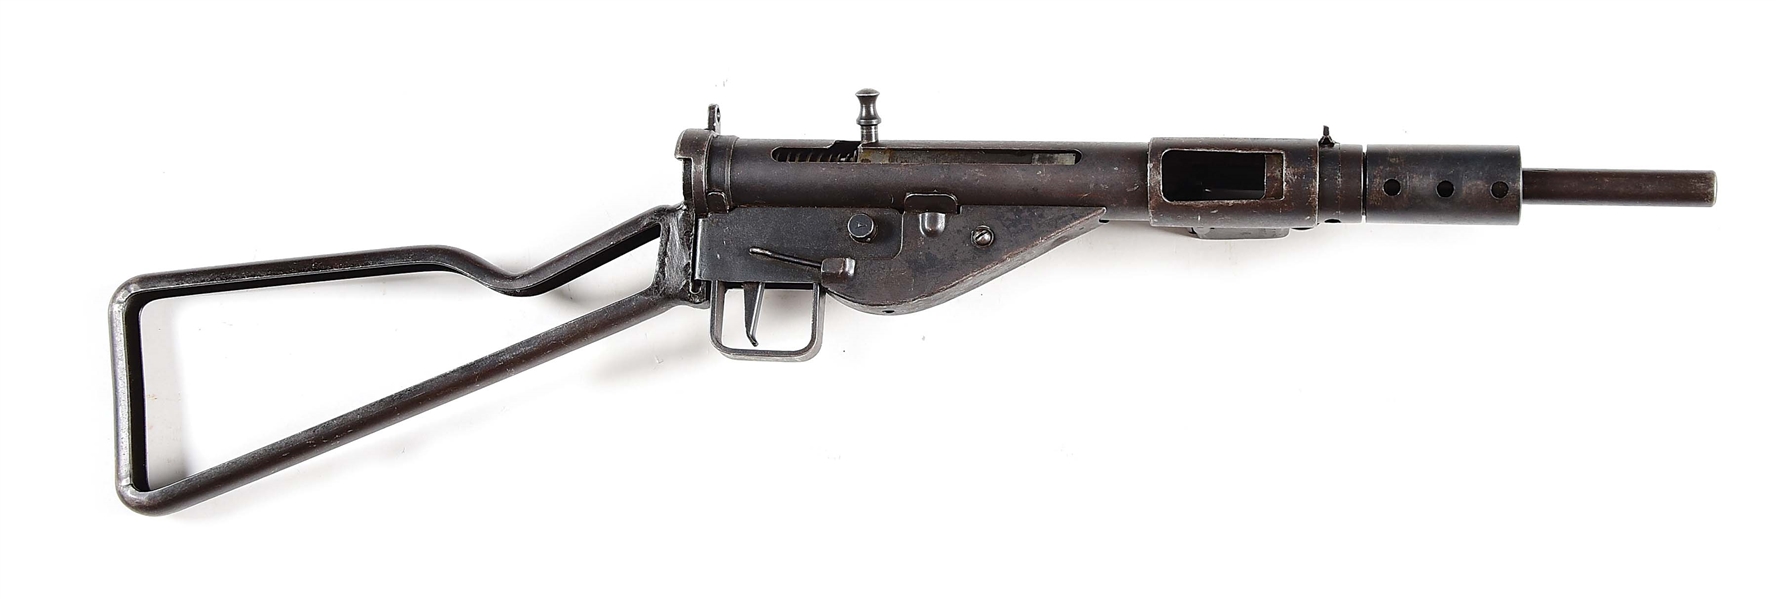 (N) FINE CONDITION ORIGINAL BRITISH STEN MK II MACHINE GUN (PRE-86 DEALER SAMPLE).